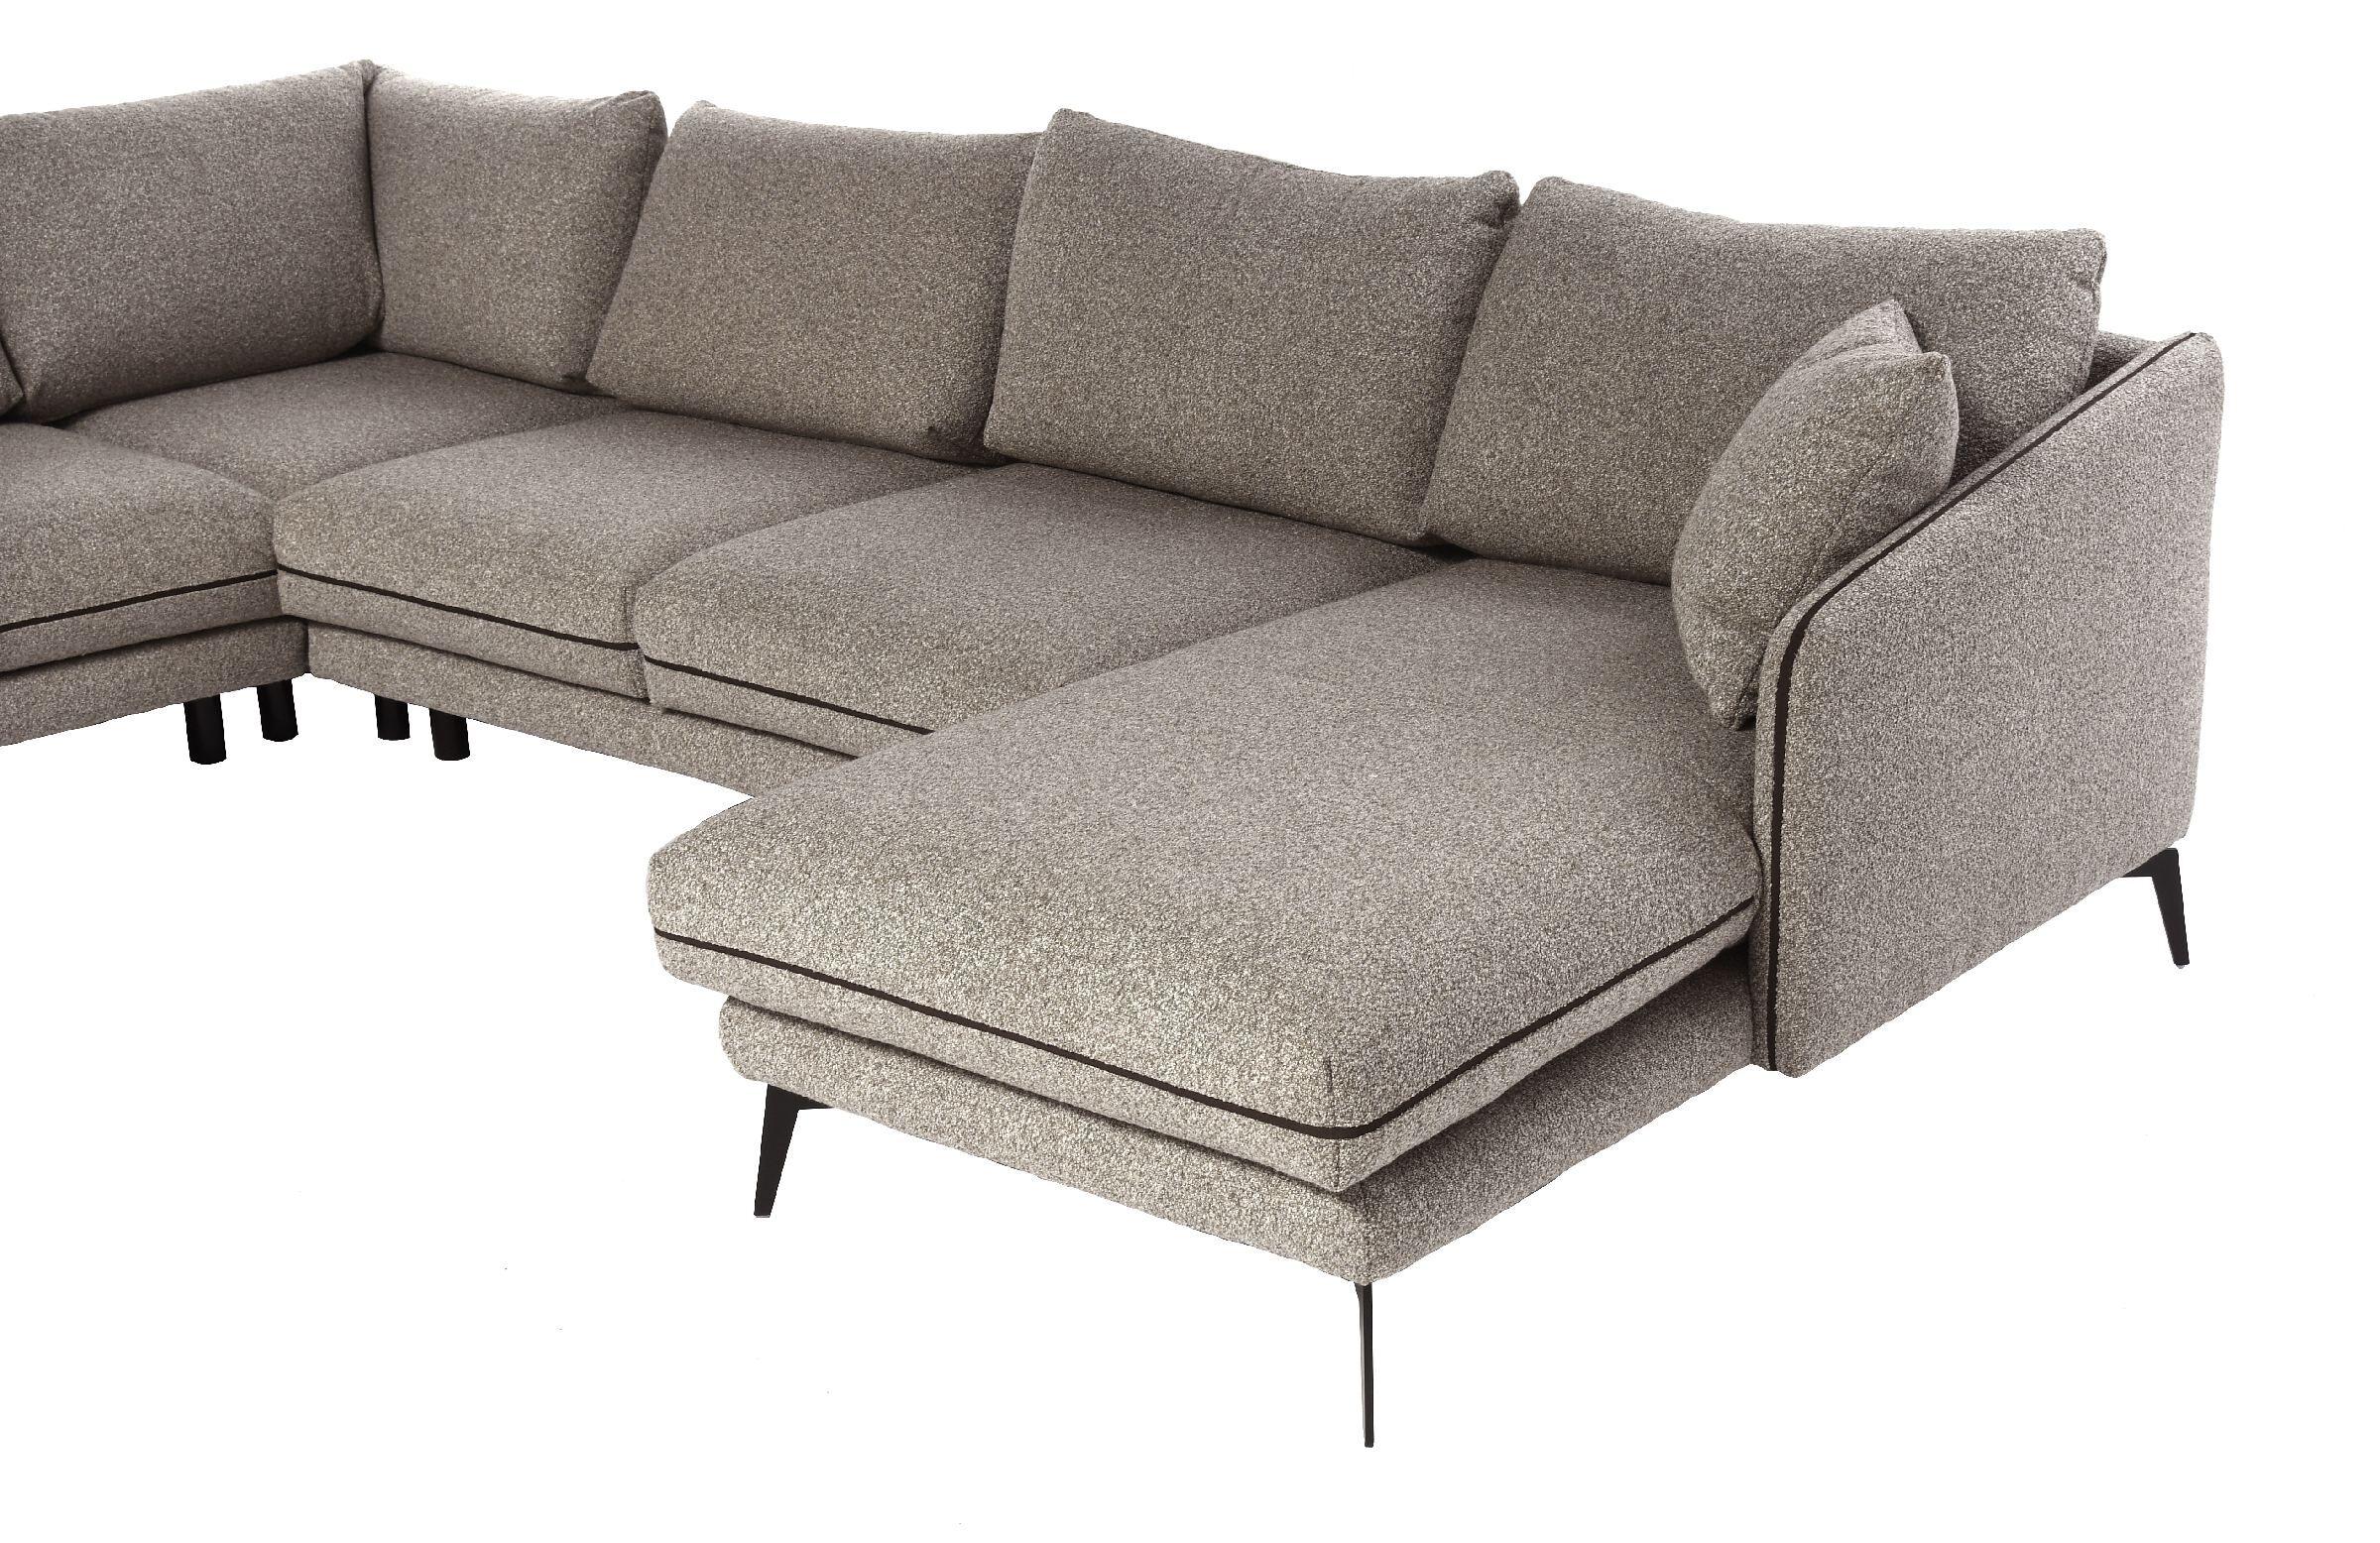 Sofa narożna Entity 336x160/284x86cm